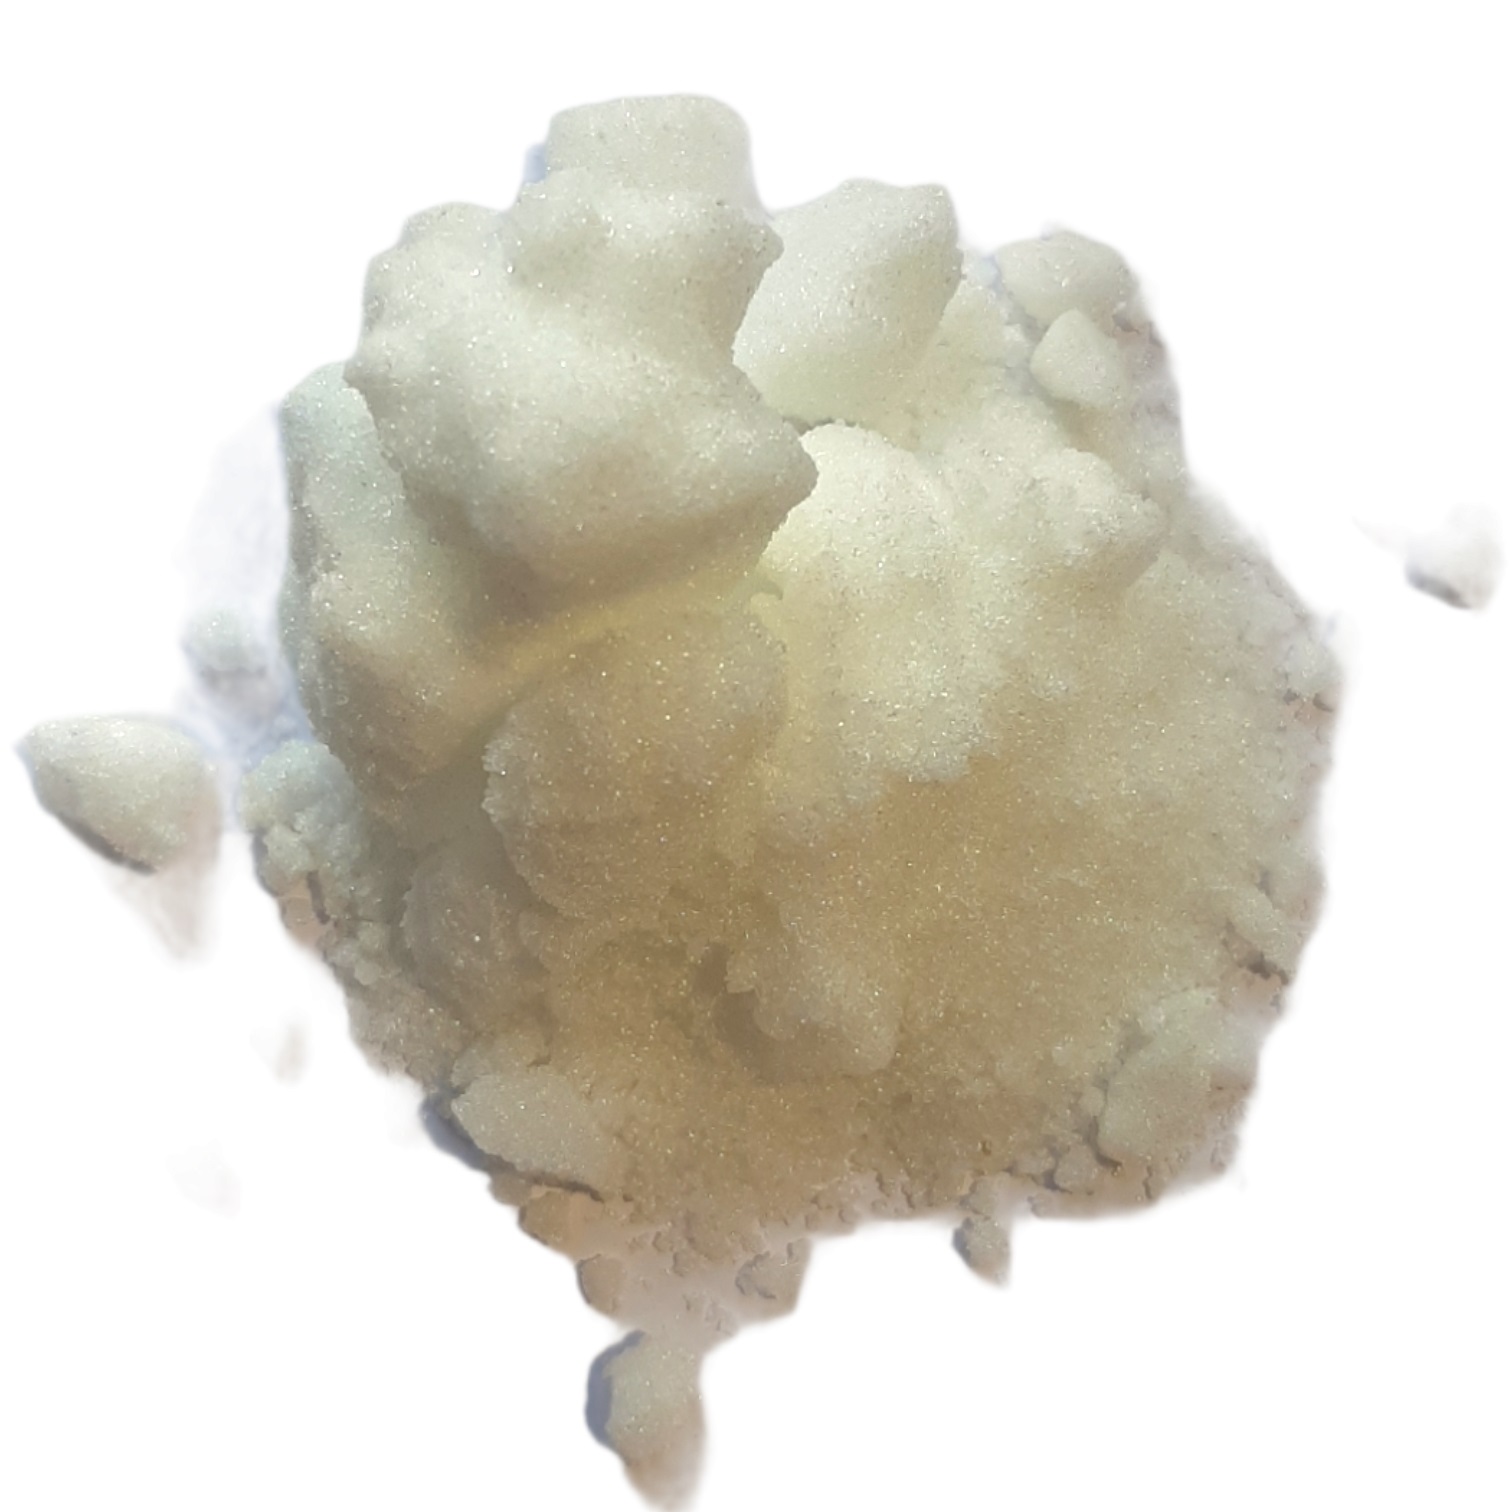 tweeling politicus Rood Online kopen: Kamfer (kristallen) - Cinnamomum camphoraKorting vanaf 500g  !500g > -10% op de basis prijs van 100g1kg > -20% op de basisprijs van  100g5kg > -24% op de basisprijs van 100g10kg > -